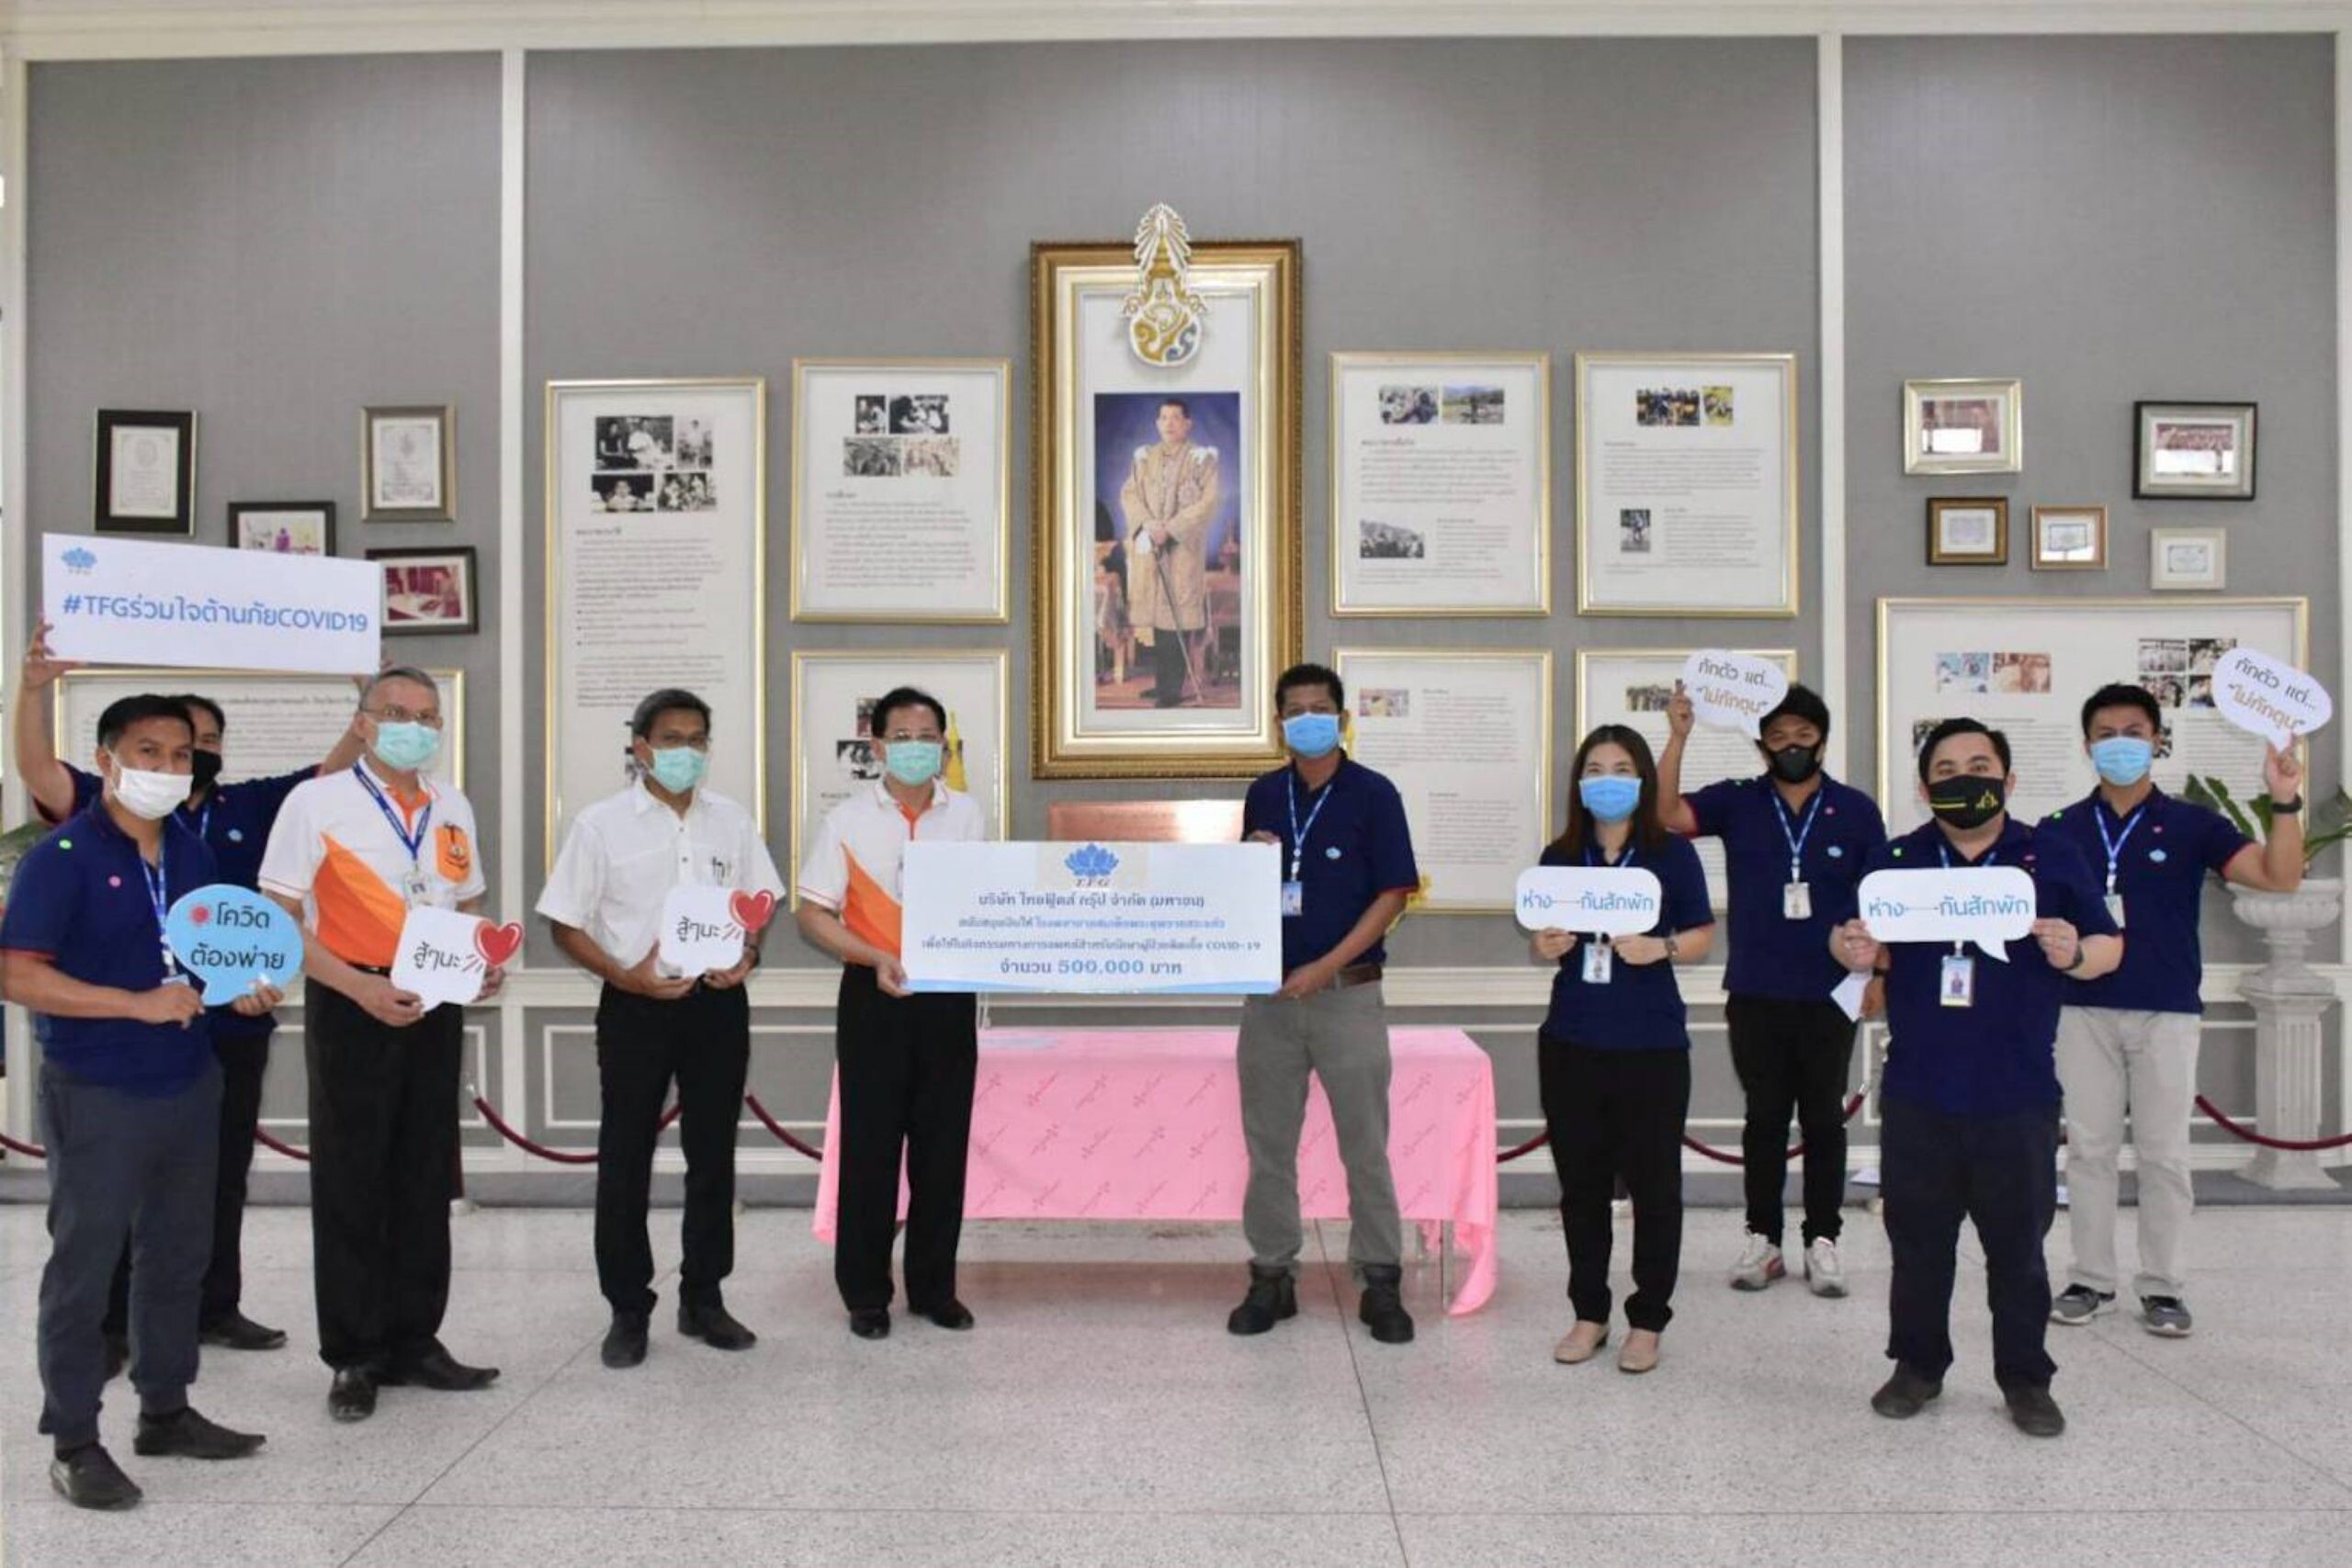 ภาพข่าว: TFG ร่วมใจสู้ภัยโควิด-19 บริจาคเงินให้กับ “โรงพยาบาลสมเด็จ พระยุพราชสระแก้ว”